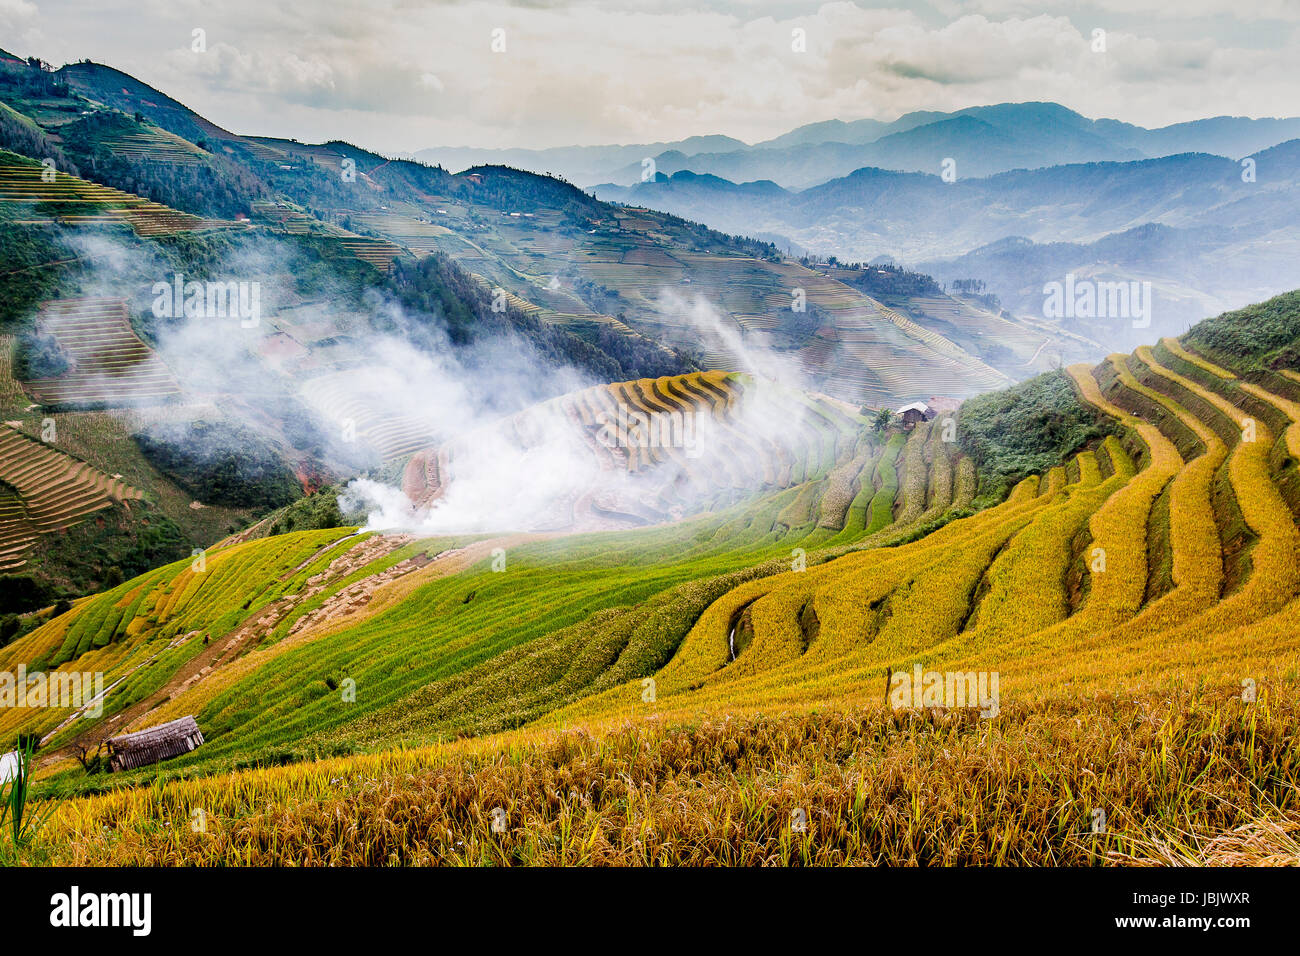 Le Viet Nam Mu Cang Chai rizières en terrasses sur la saison des récoltes ou golden season y compris de colline montagne montagnes et la texture de la courbe Banque D'Images